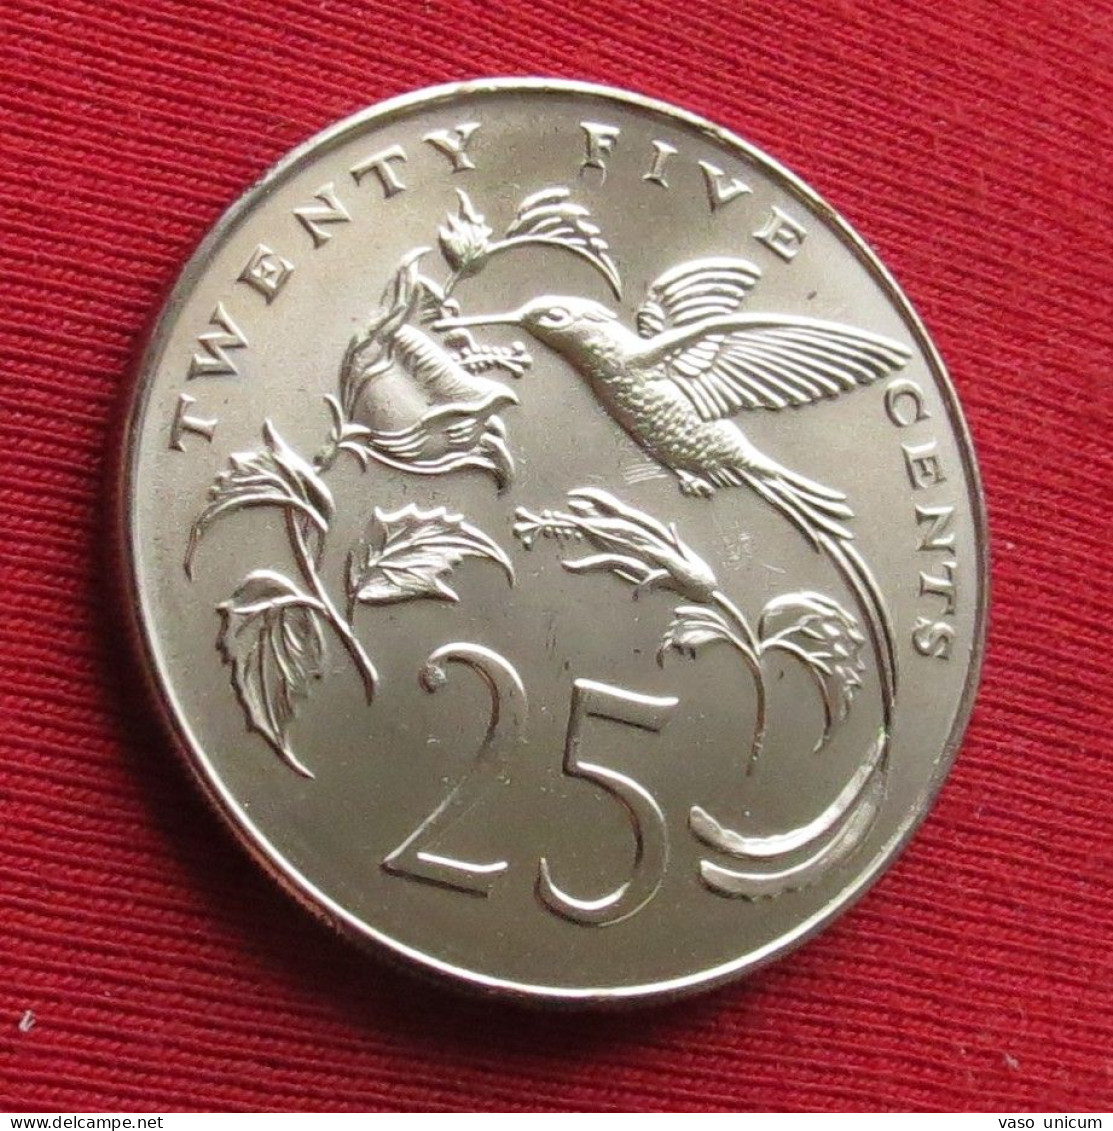 Jamaica 25 Cents 1975 MATTE Km 56  Jamaique Minted 1503 Coins UNC - Jamaica